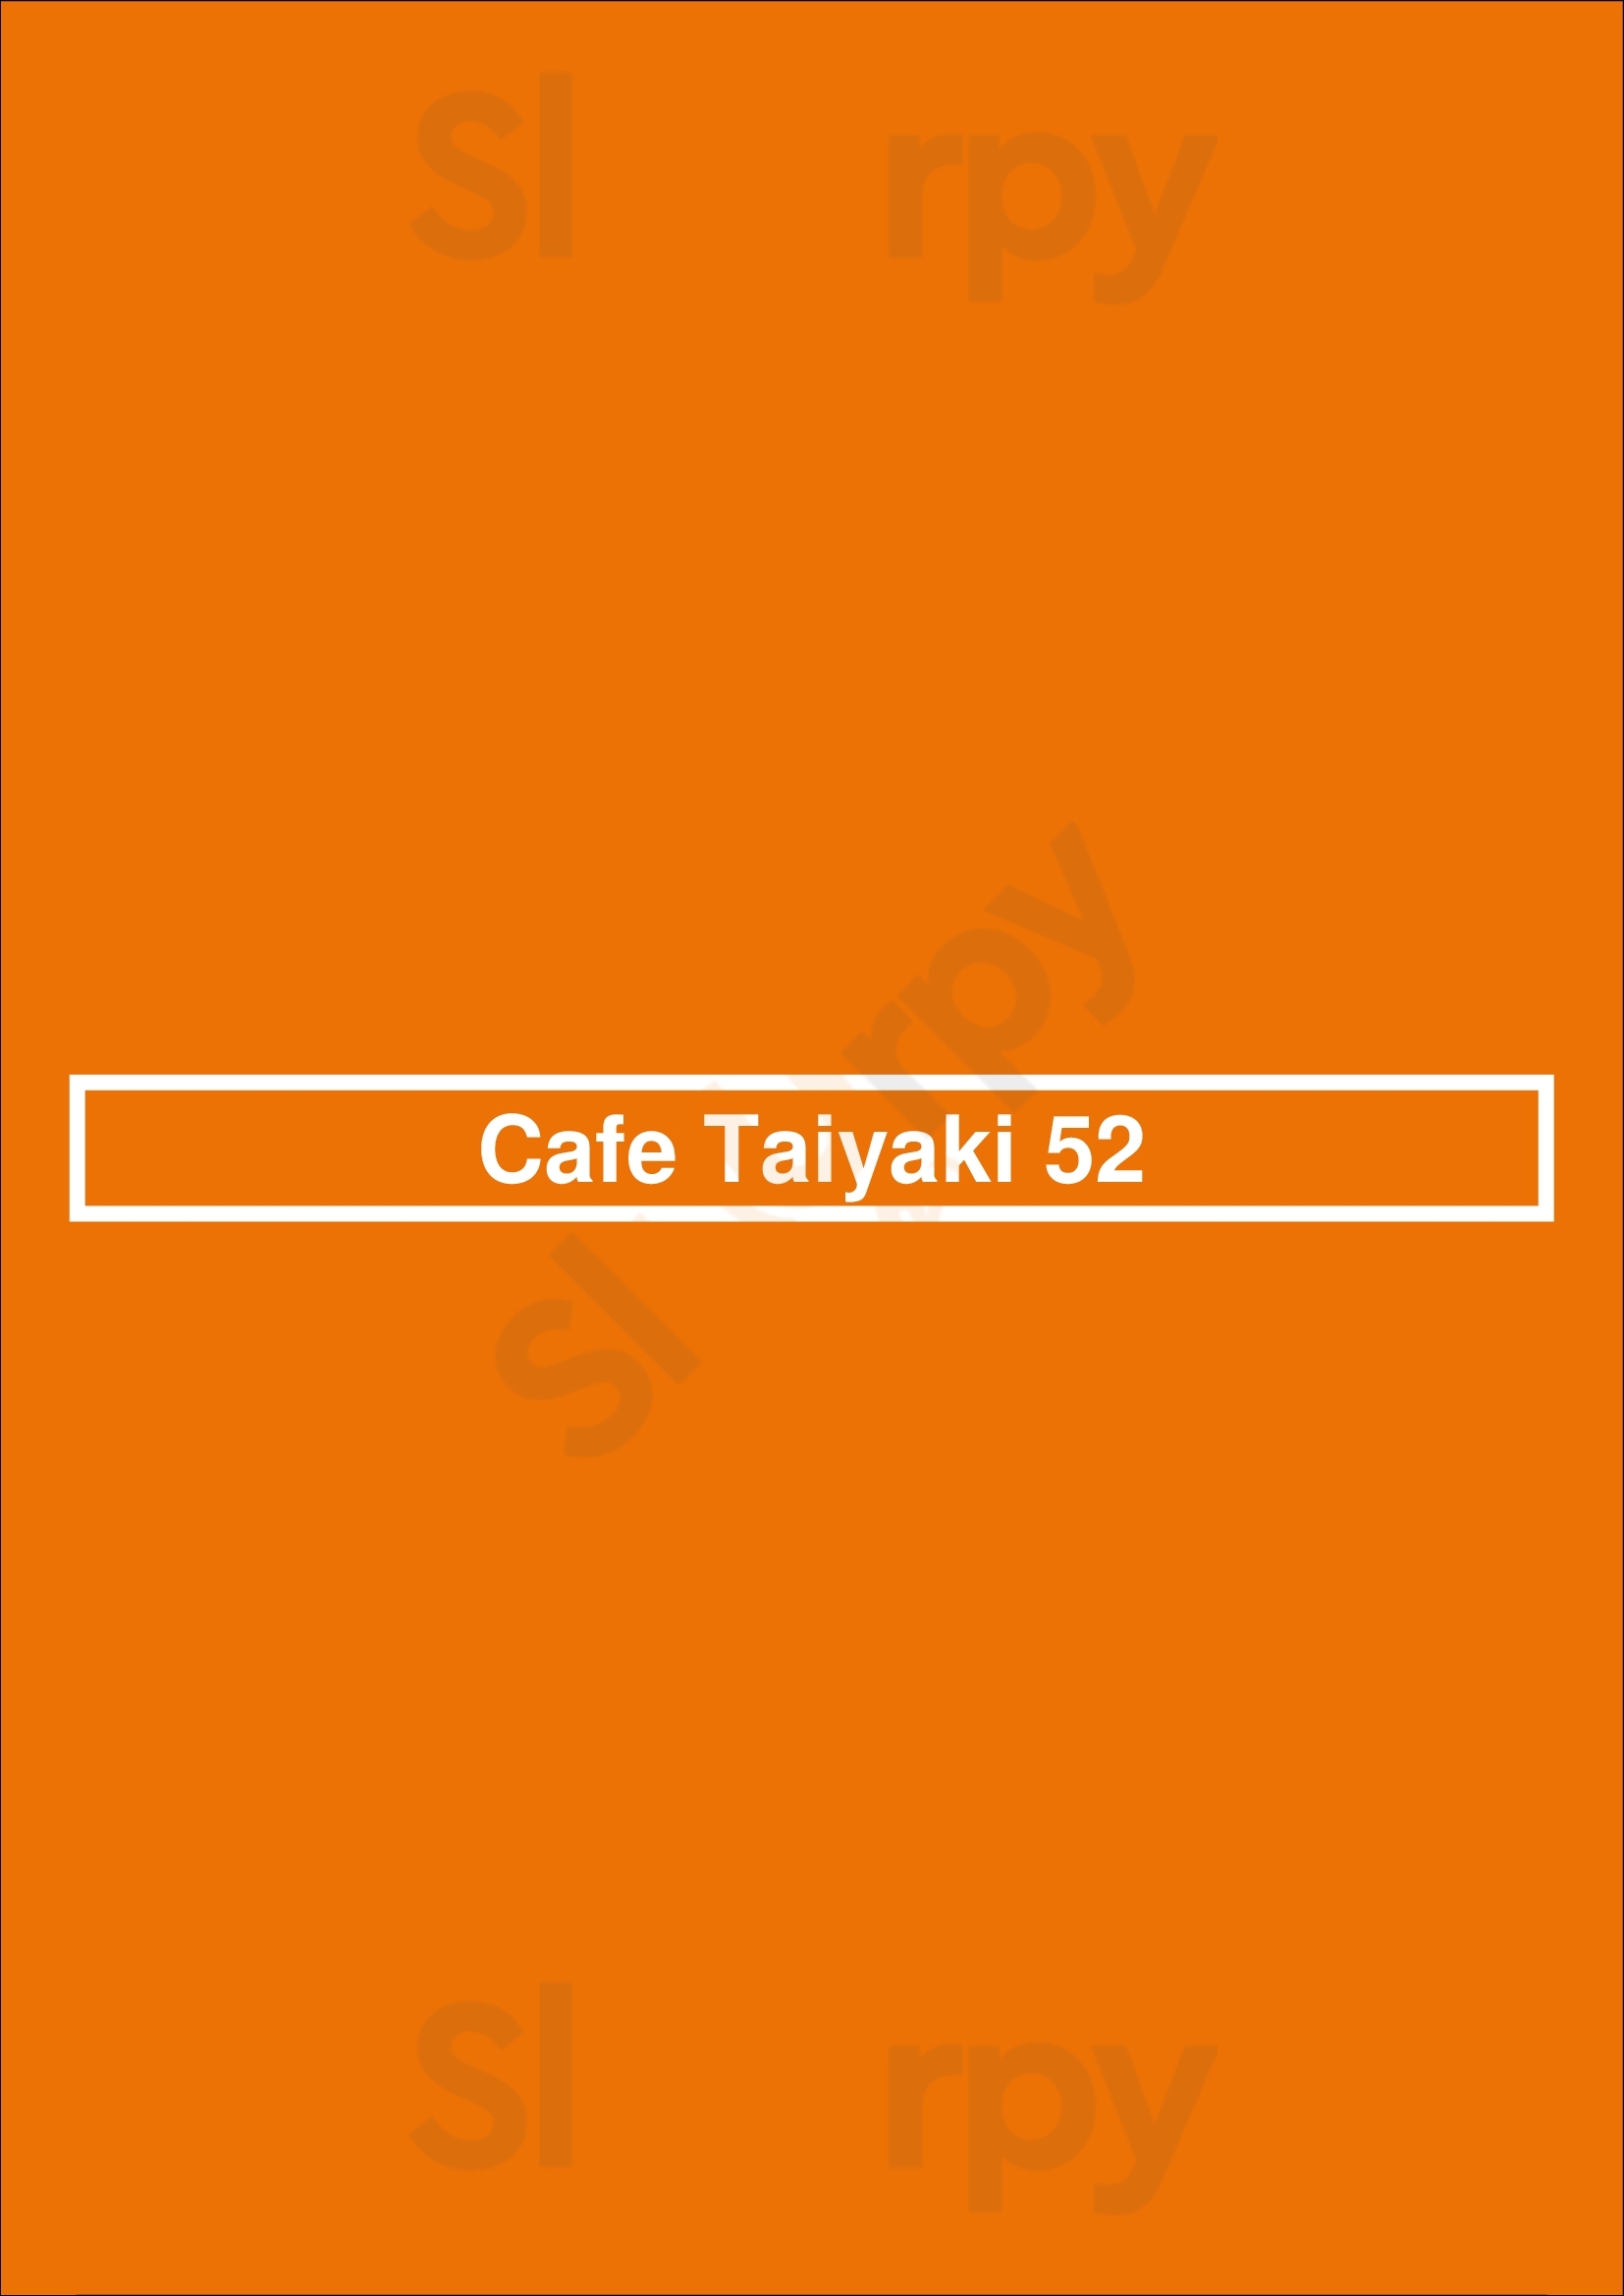 Cafe Taiyaki 52 Halifax Menu - 1